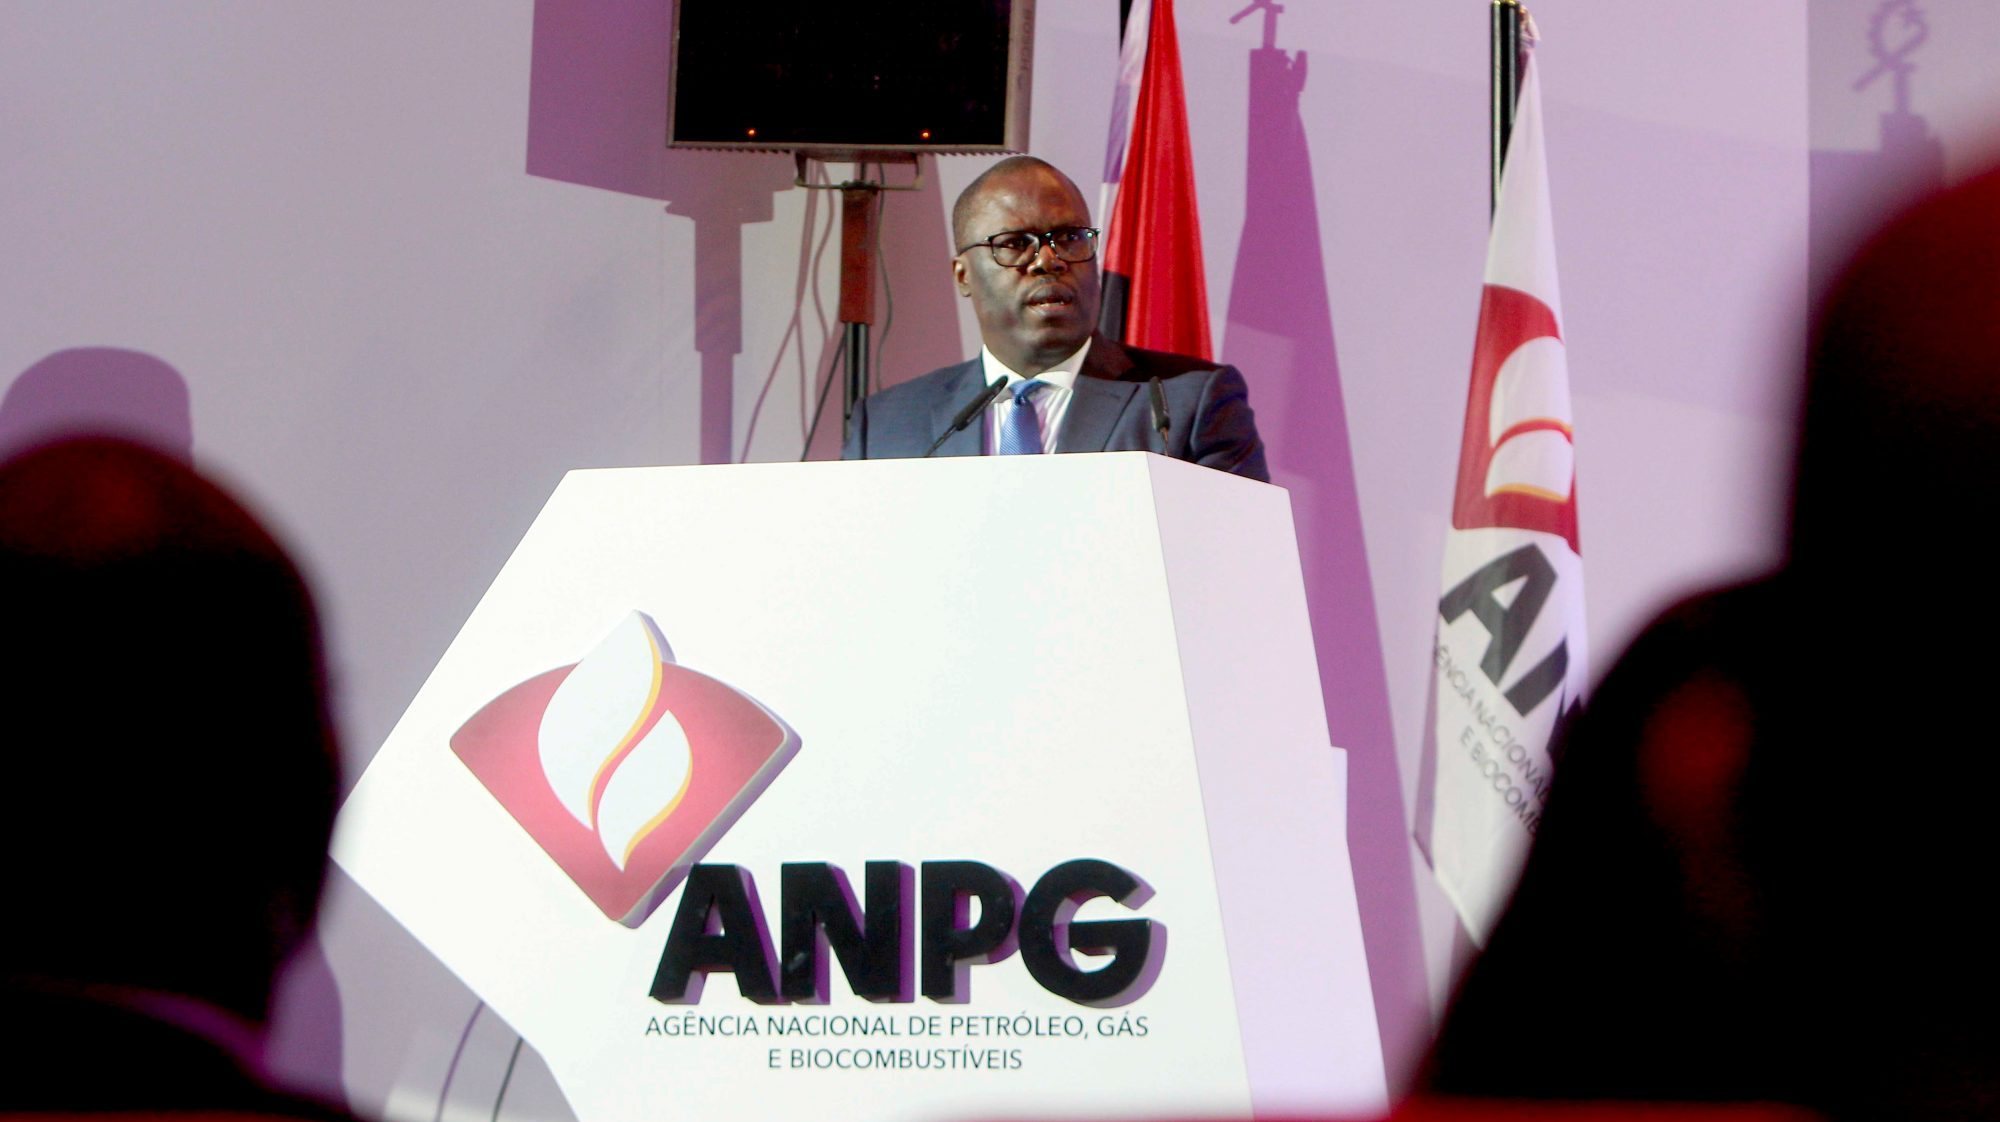 O governo angolano vai tentar contrariar esta tendência através da exploração de novos poços e licitação de novos blocos